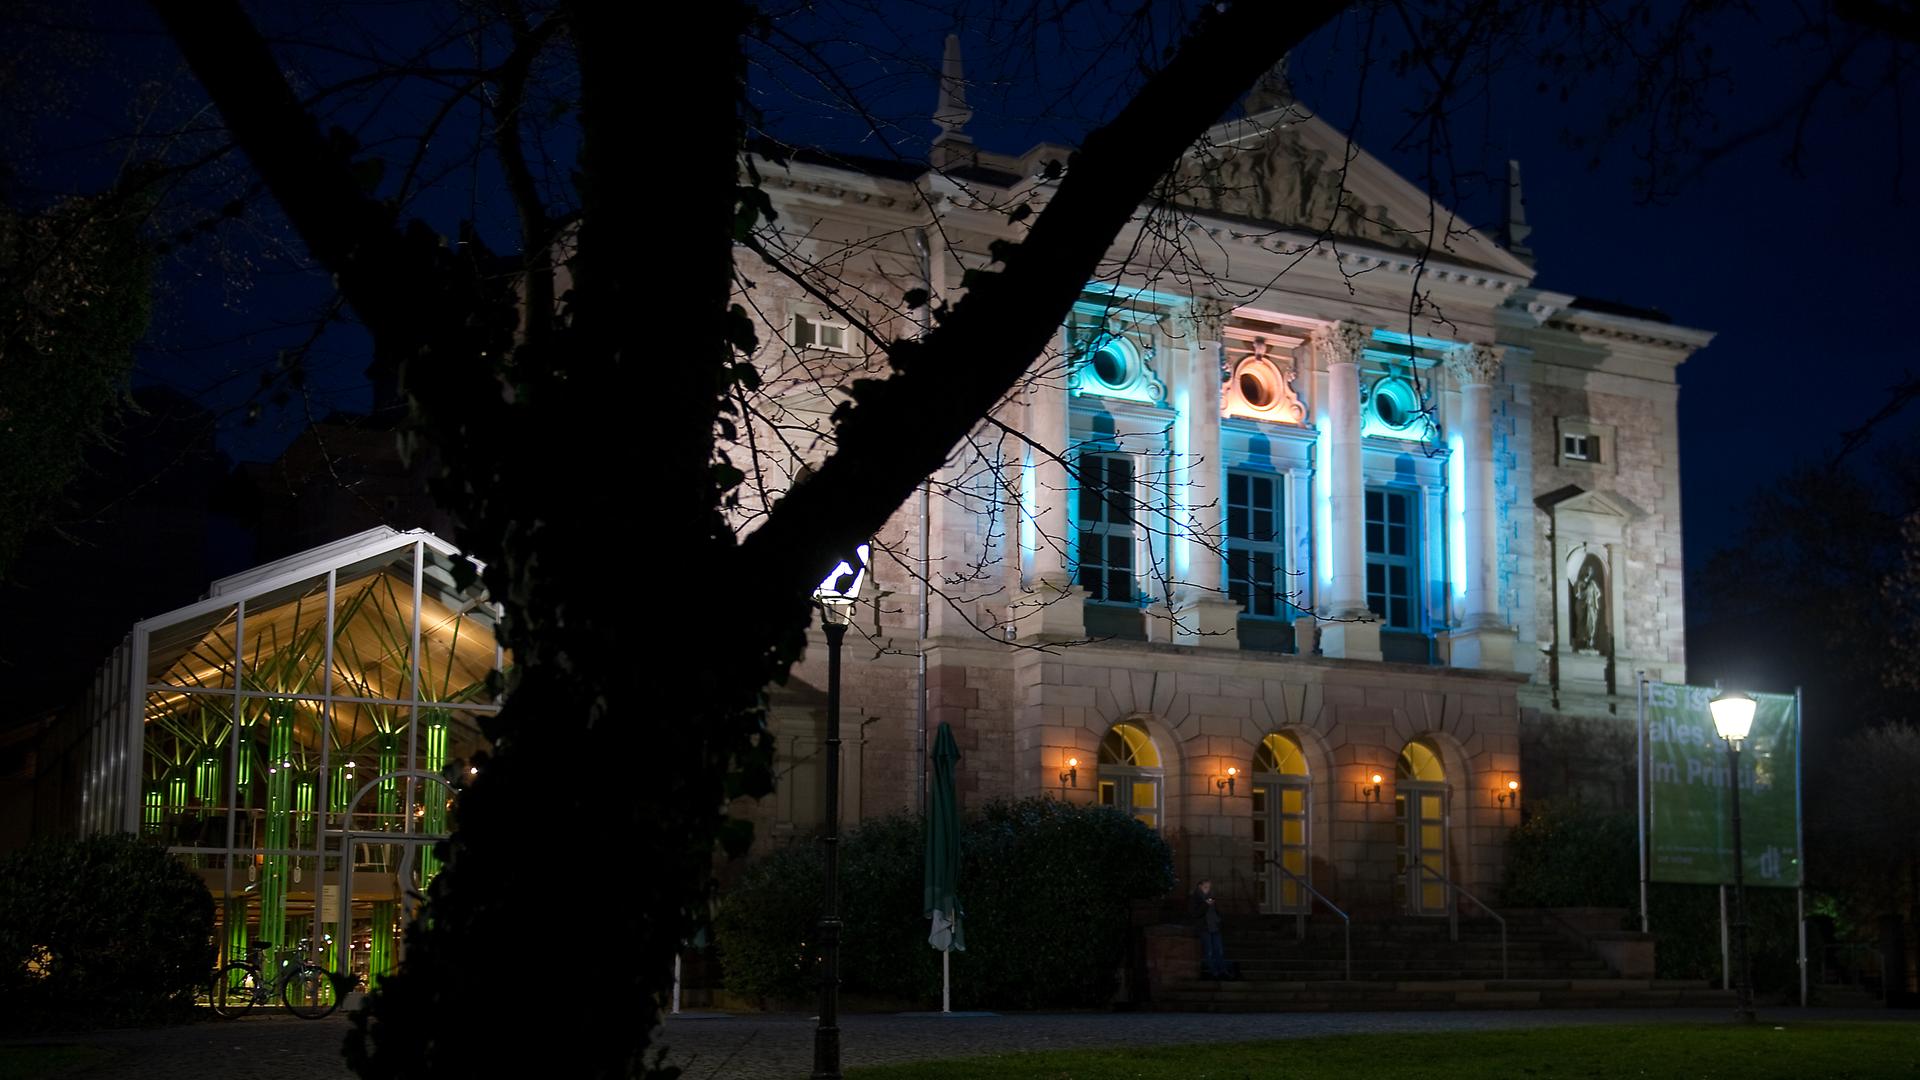 Das Bild zeigt das Deutsche Theater in Göttingen nachts mit beleuchteten Fenstern. Es ist ein altes Gebäude mit hohen Fenstern und Stuckverzierungen an der Fassade. 
